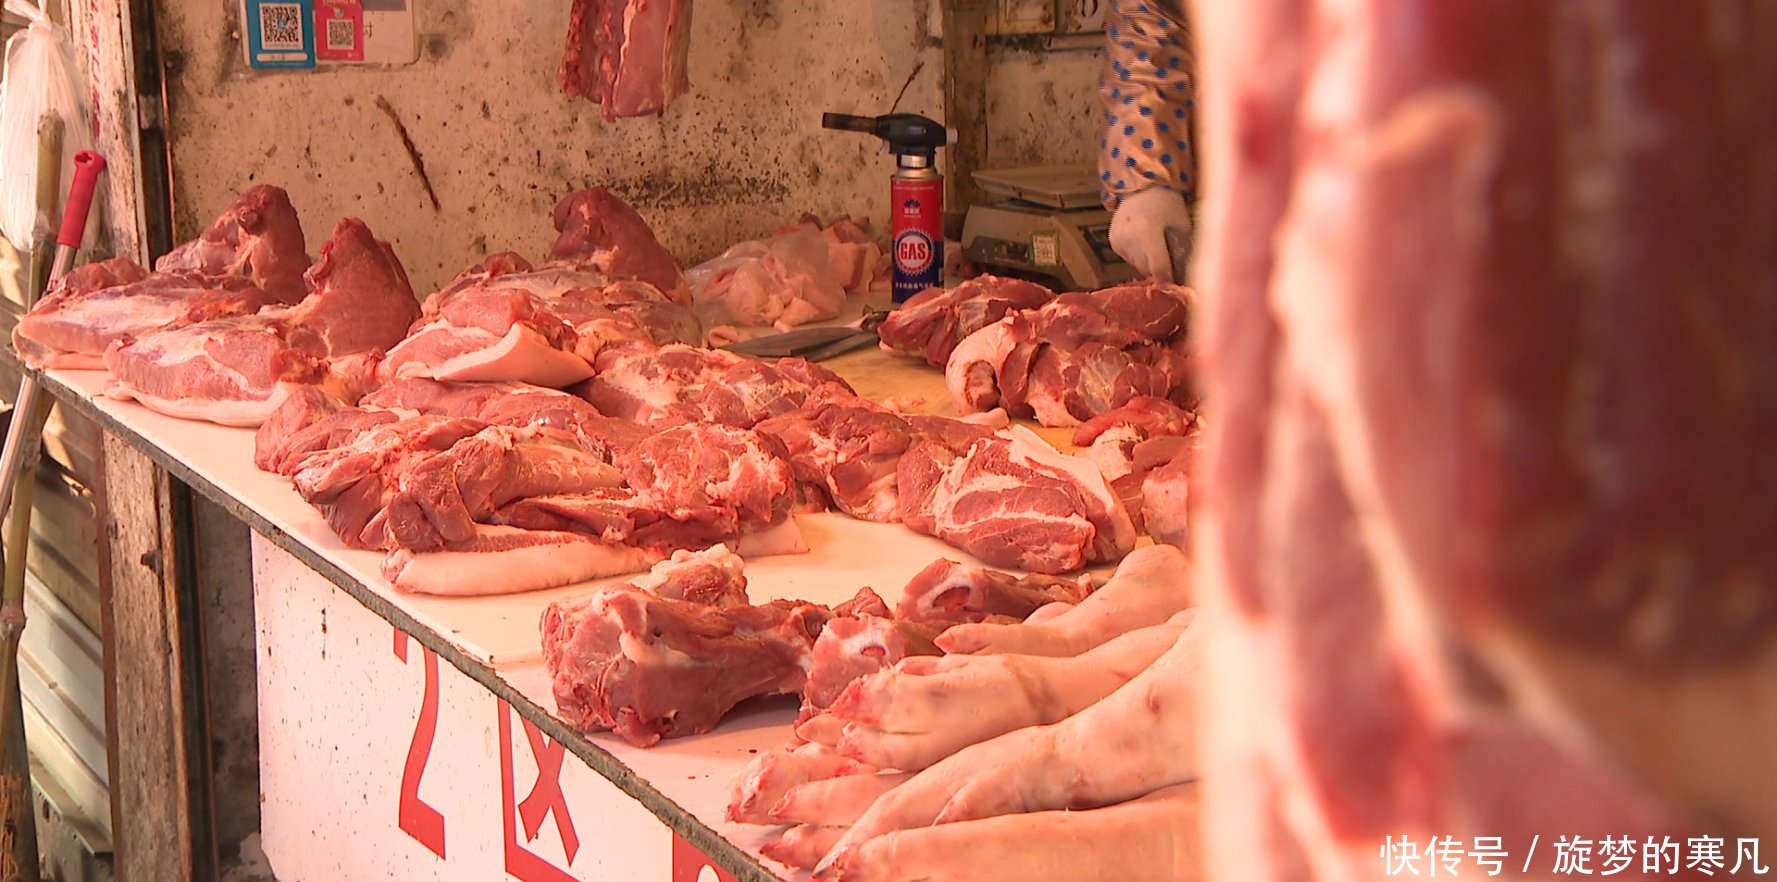 浓雾中可疑猪肉流入苏州长江路批发市场 记者